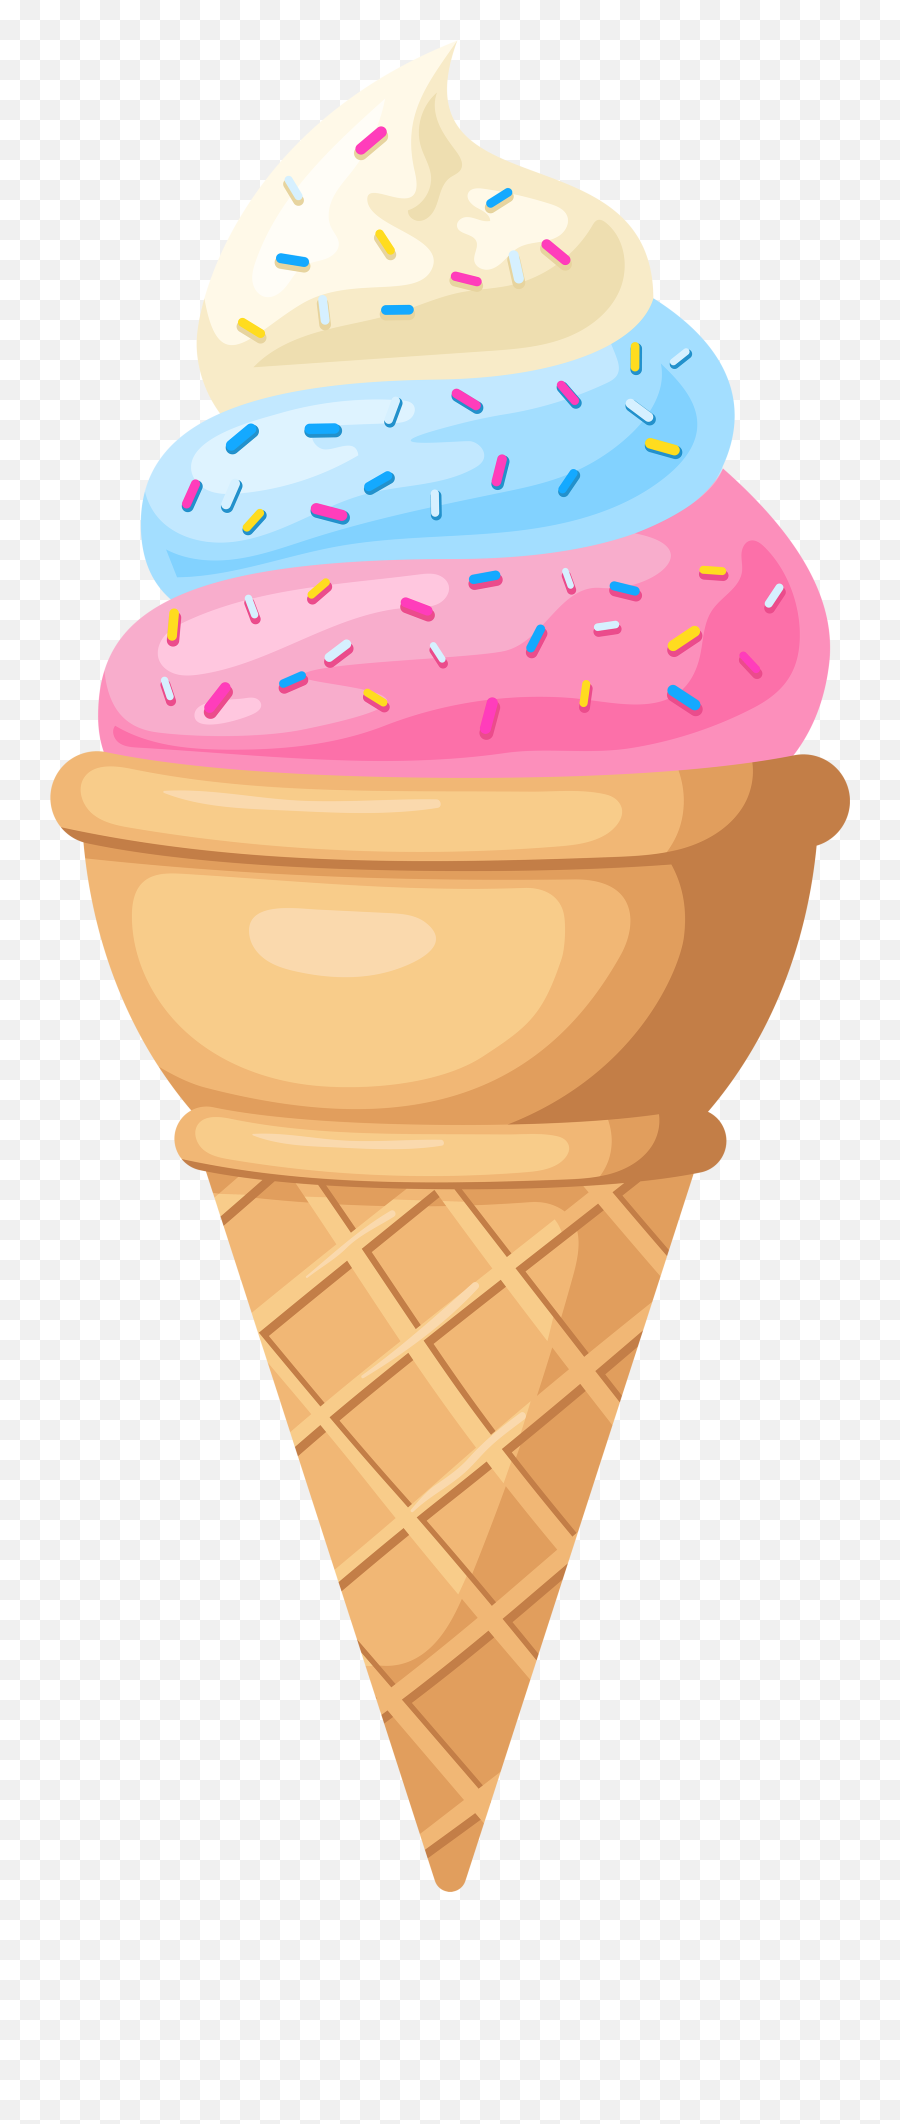 Free Transparent Ice Cream Cone - Clipart Images Of Icecream Png,Ice Cream Cone Transparent